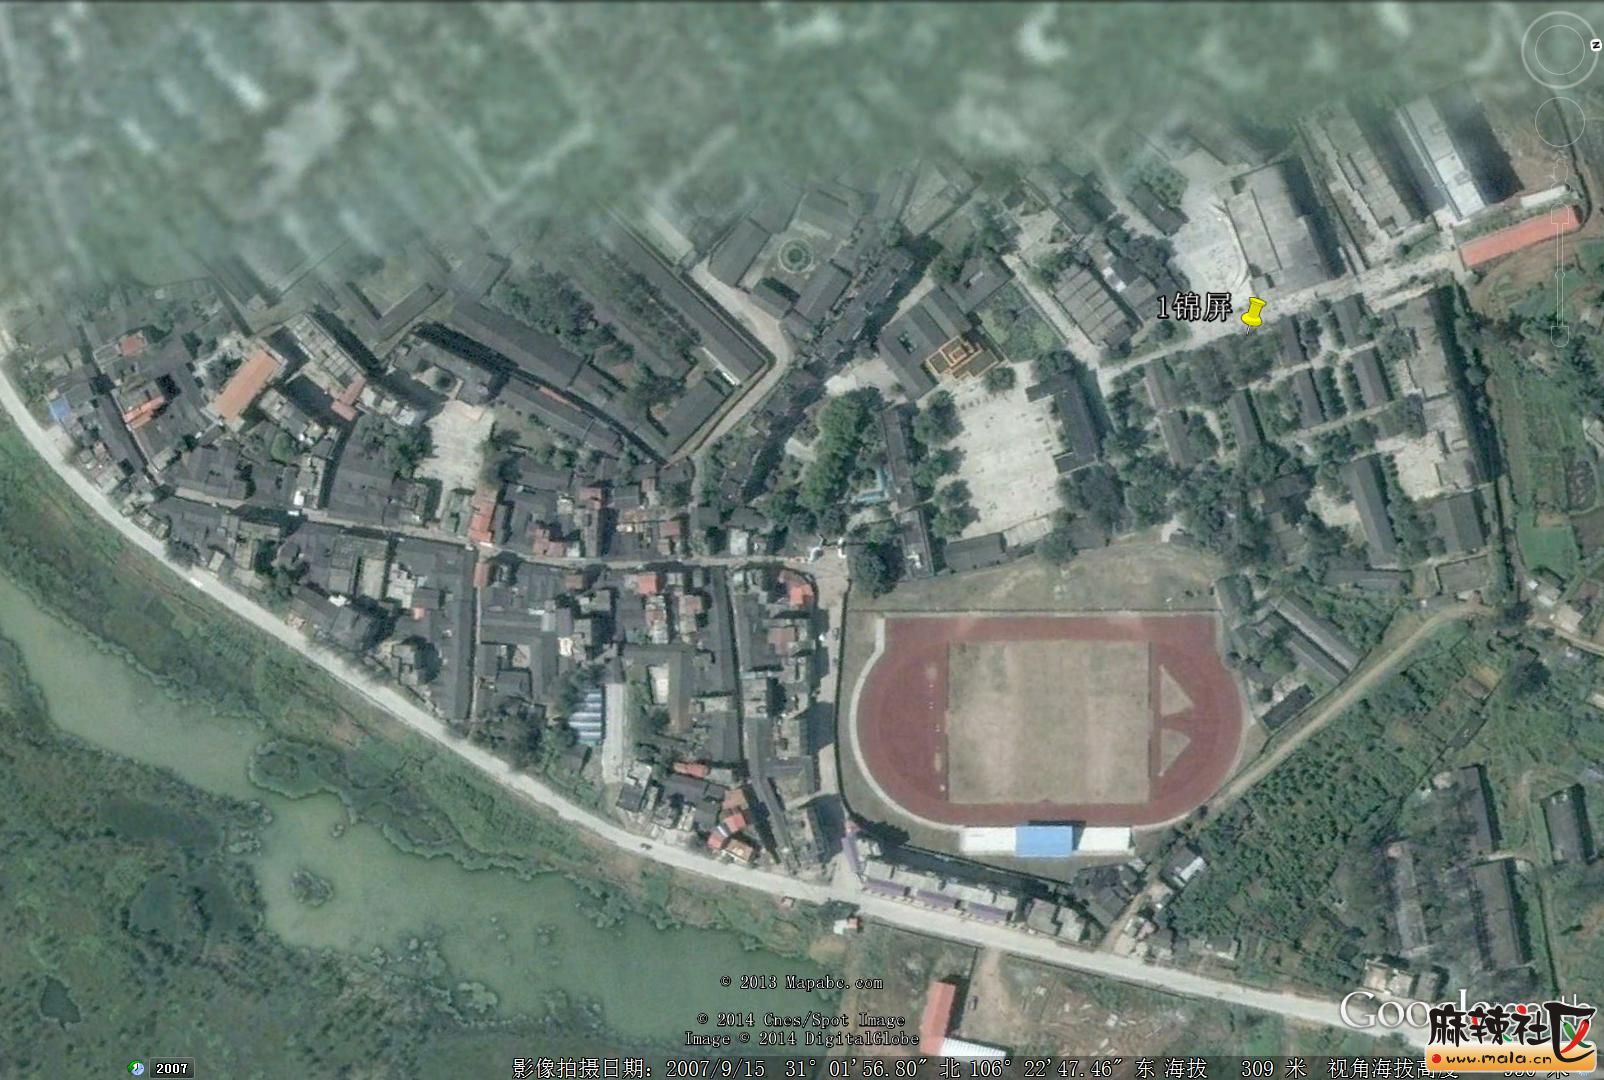 卫星地图看蓬安39个乡镇城镇建设(图说)